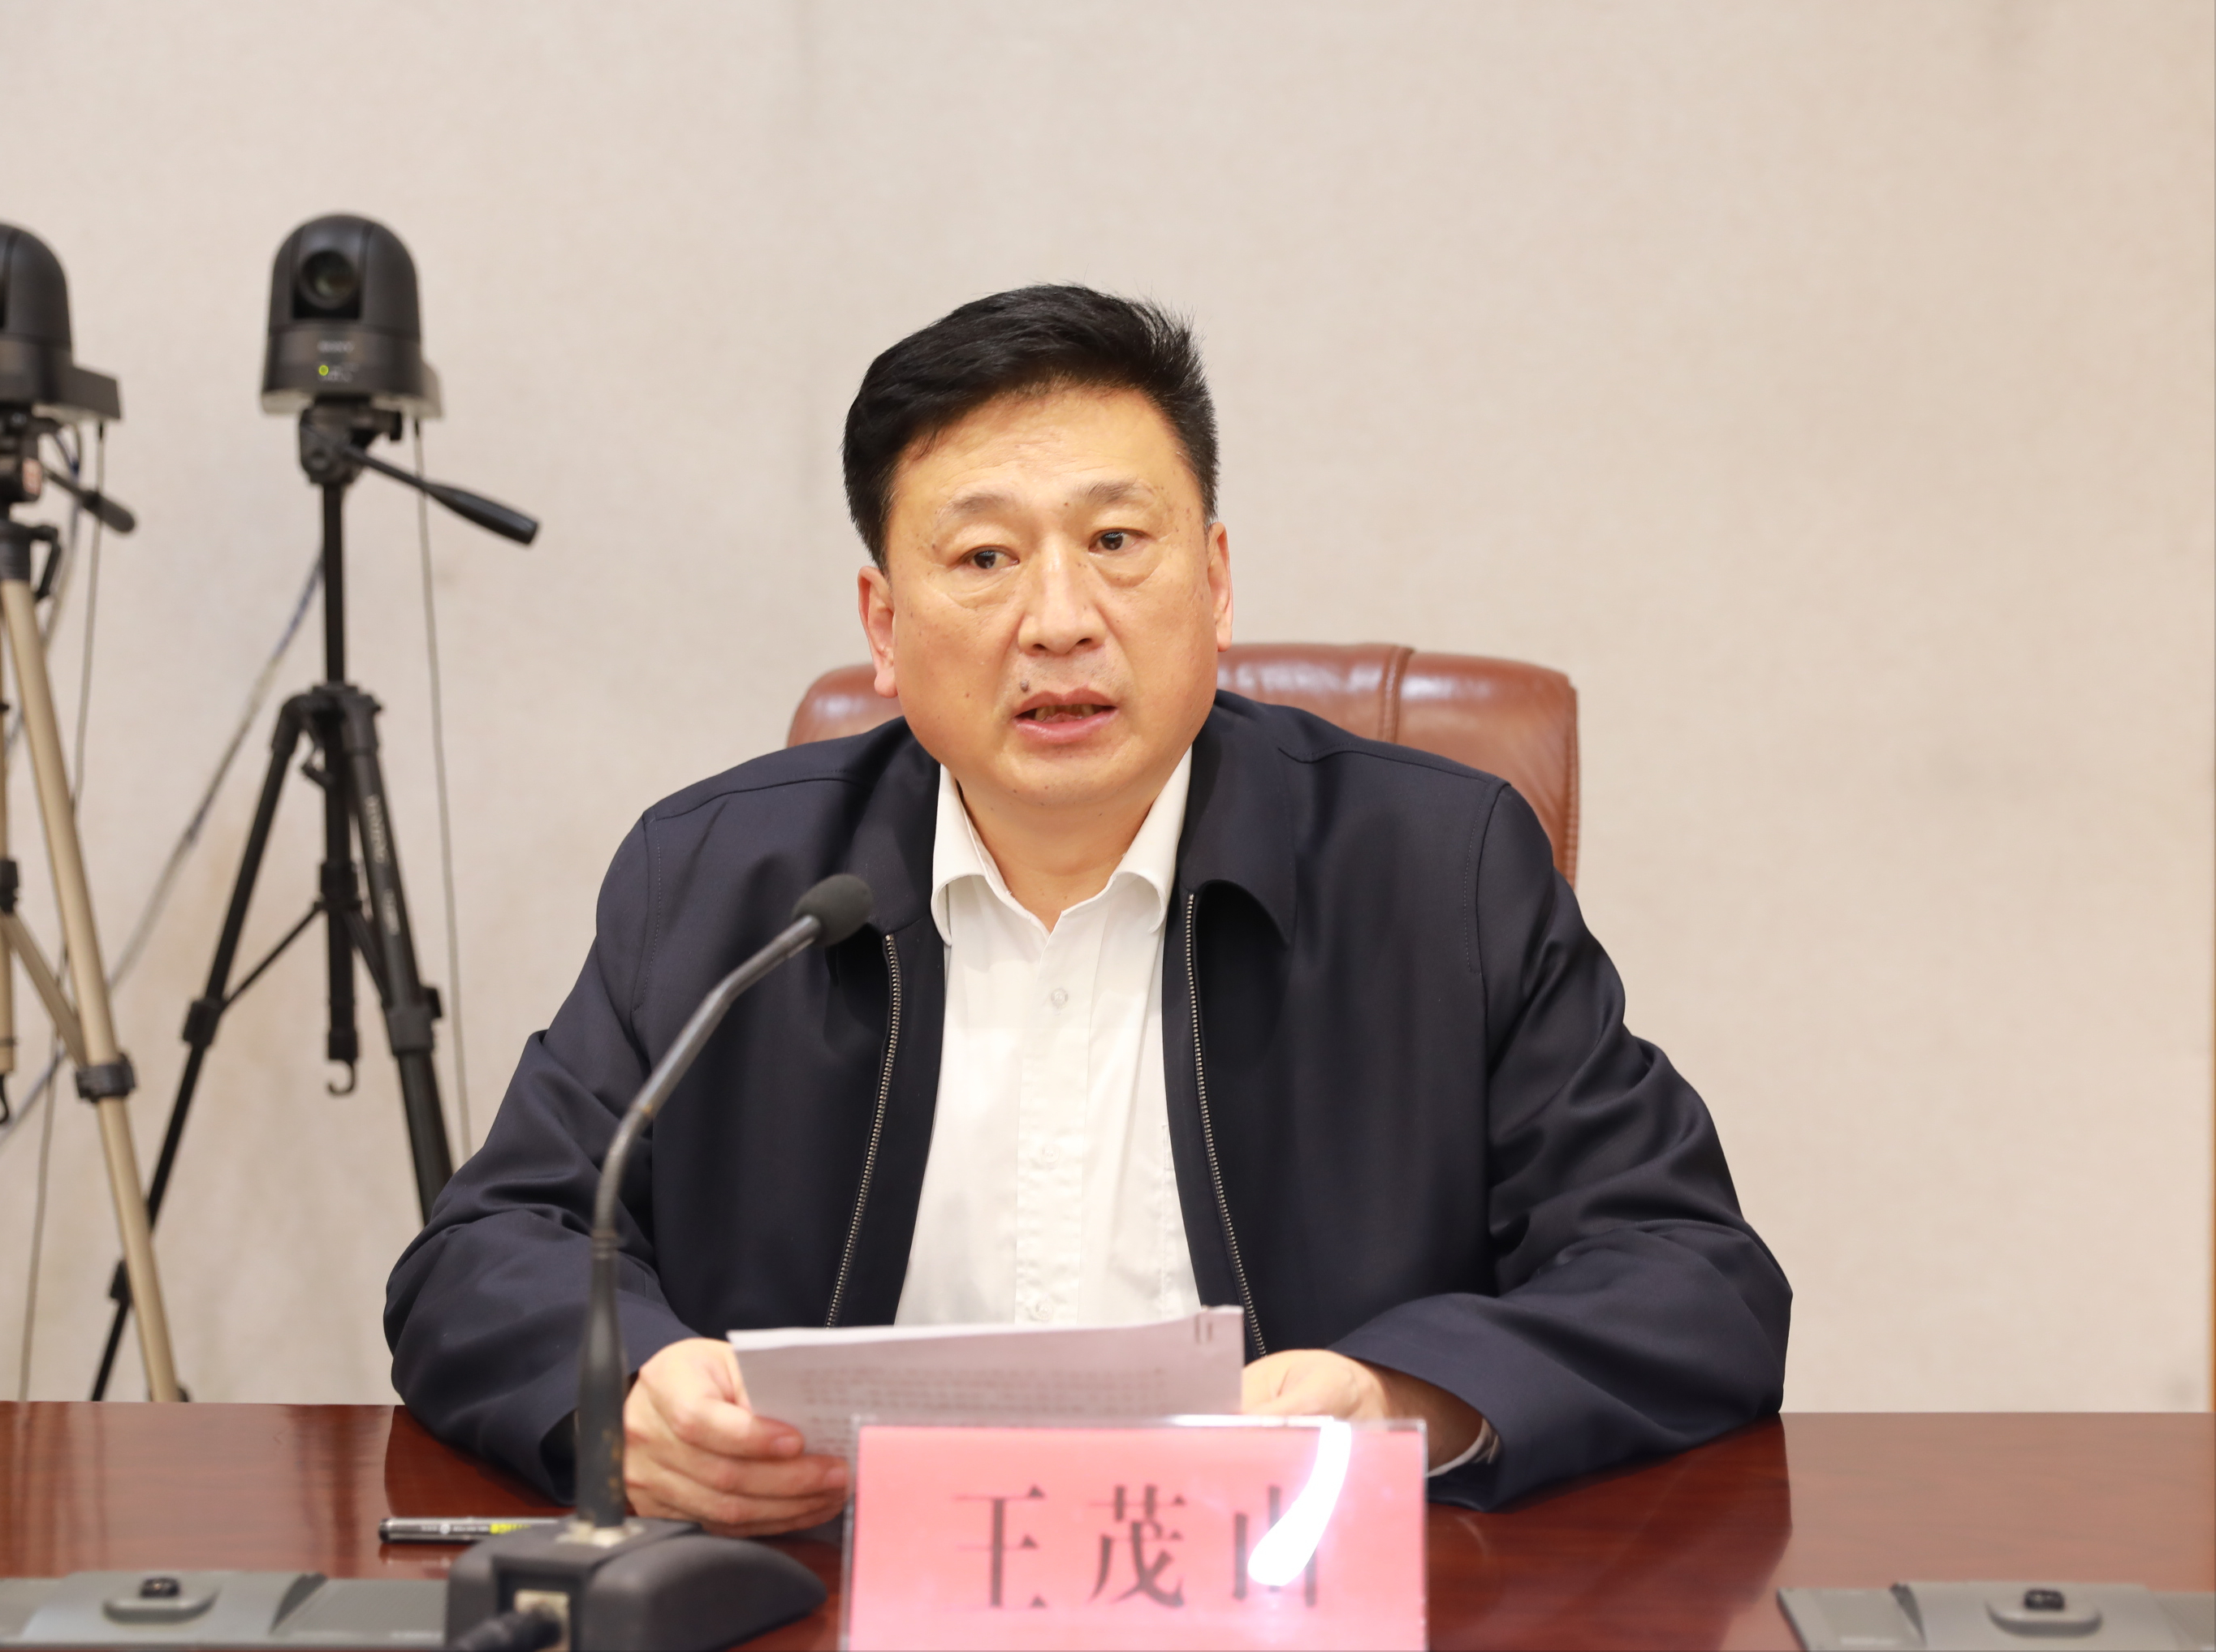 枣庄市召开全市公共法律服务体系建设推进会议